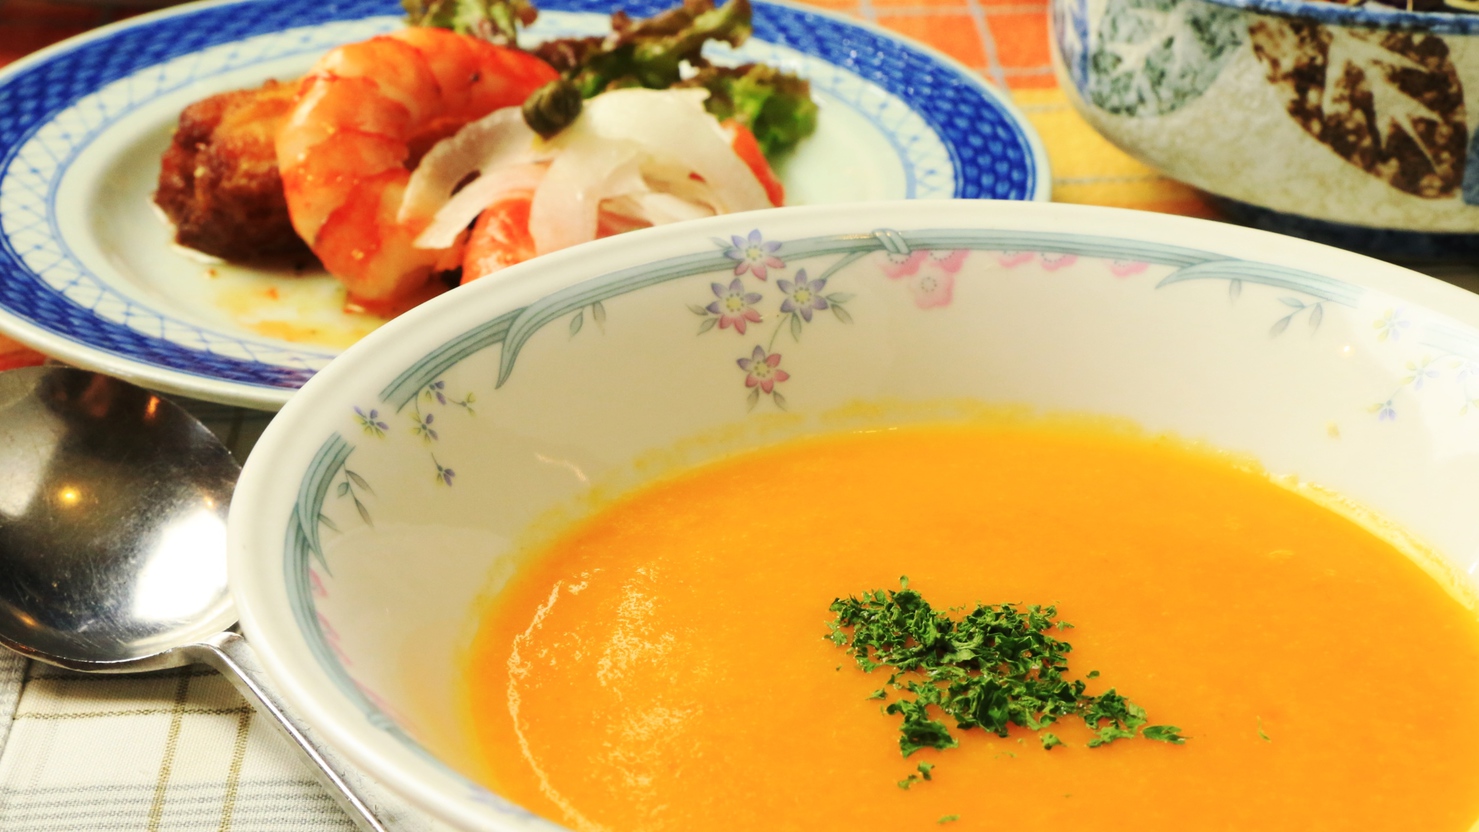 【夕食一例】にんじんスープ。素材の甘味を感じます。温かいうちにどうぞ。